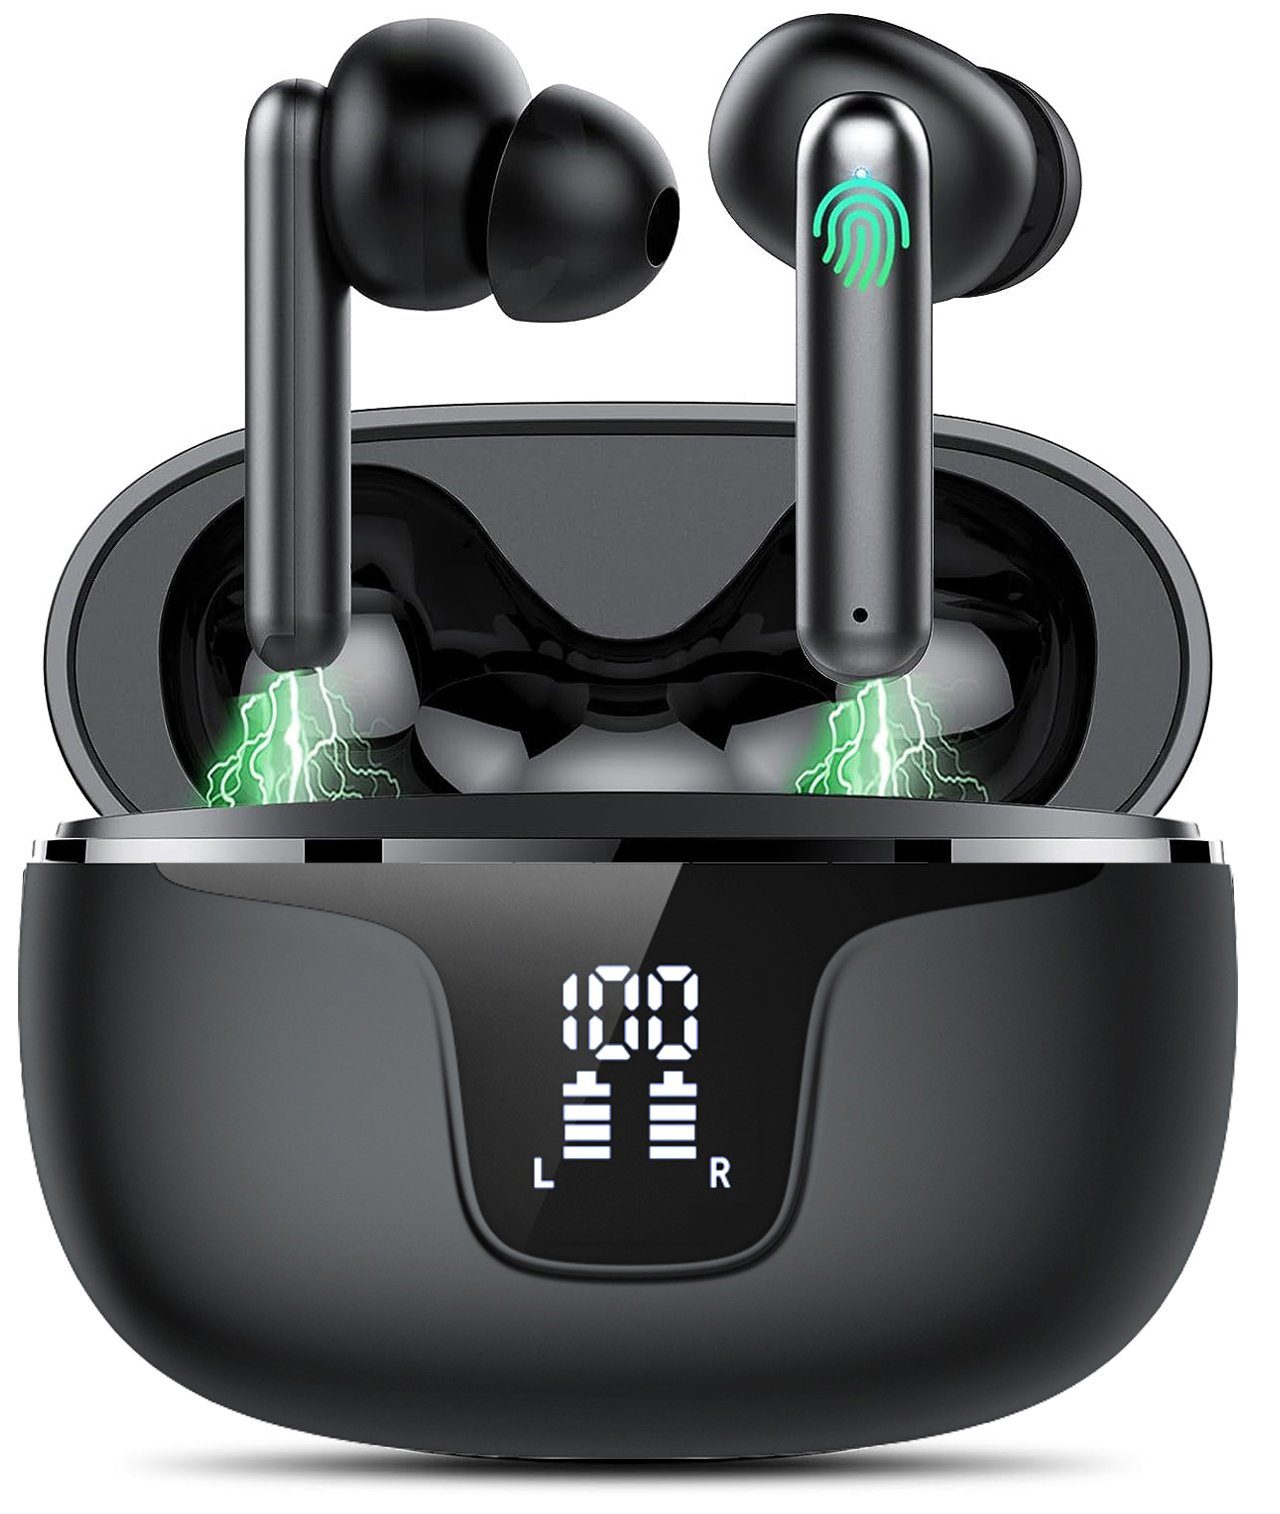 Mutoy Bluetooth Kopfhörer,Kopfhörer Kabellos Bluetooth 5.3,In Ear Kopfhörer In-Ear-Kopfhörer (Voice Assistant, ANC Noise Cancelling Ohrhörer, 36 Stunden Spielzeit, IPX5 Wasserdicht,LED Anzeige,USB-C Schnelles Aufladen) Schwarz | In-Ear-Kopfhörer